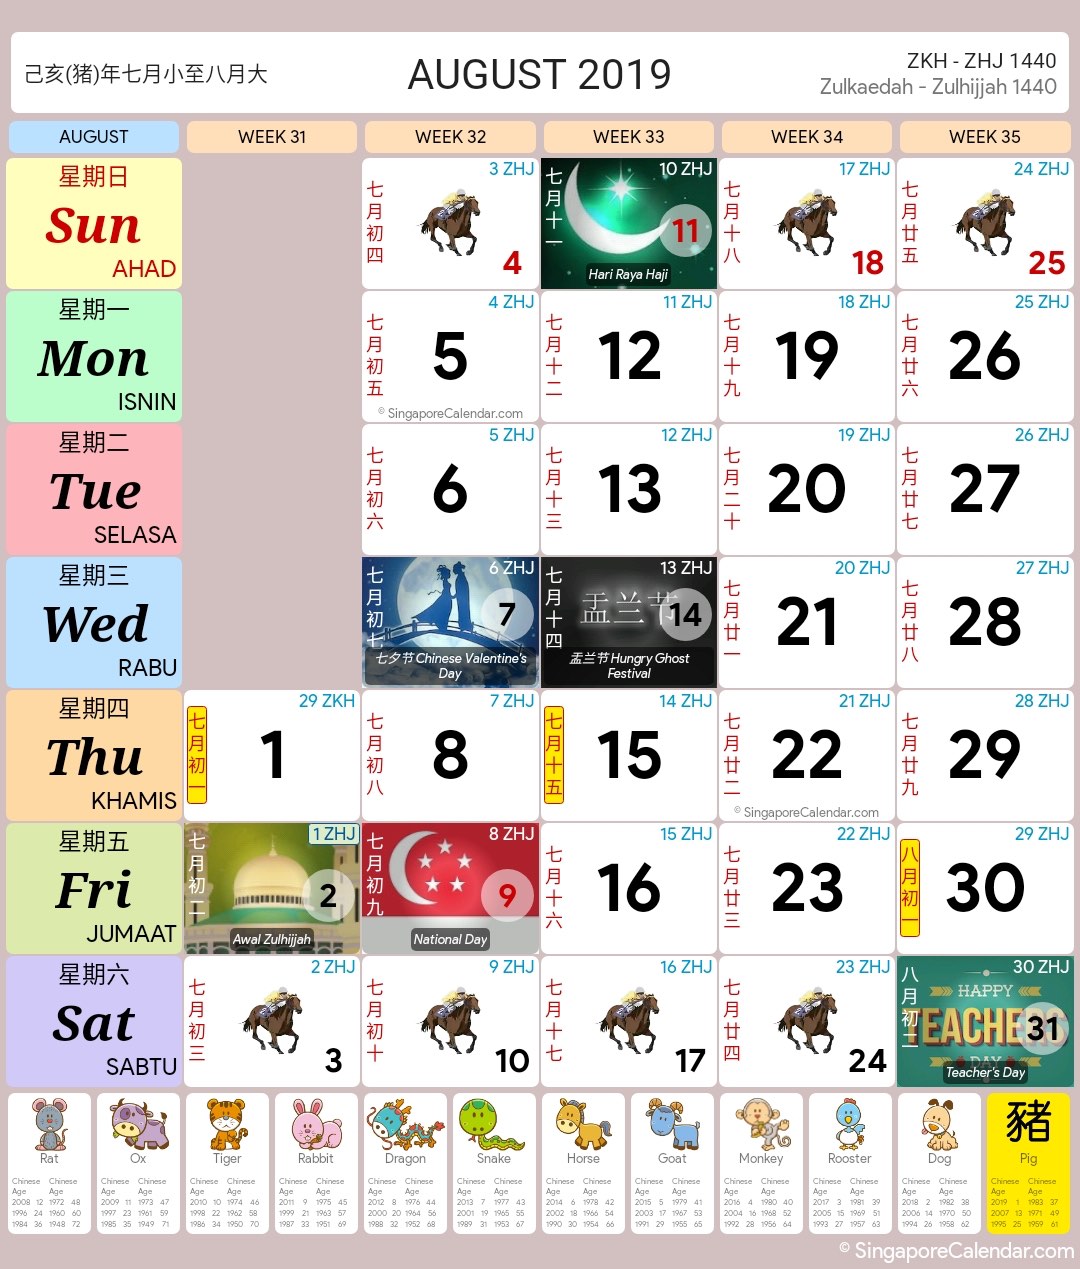 Singapore Calendar Year 2019 - Singapore Calendar